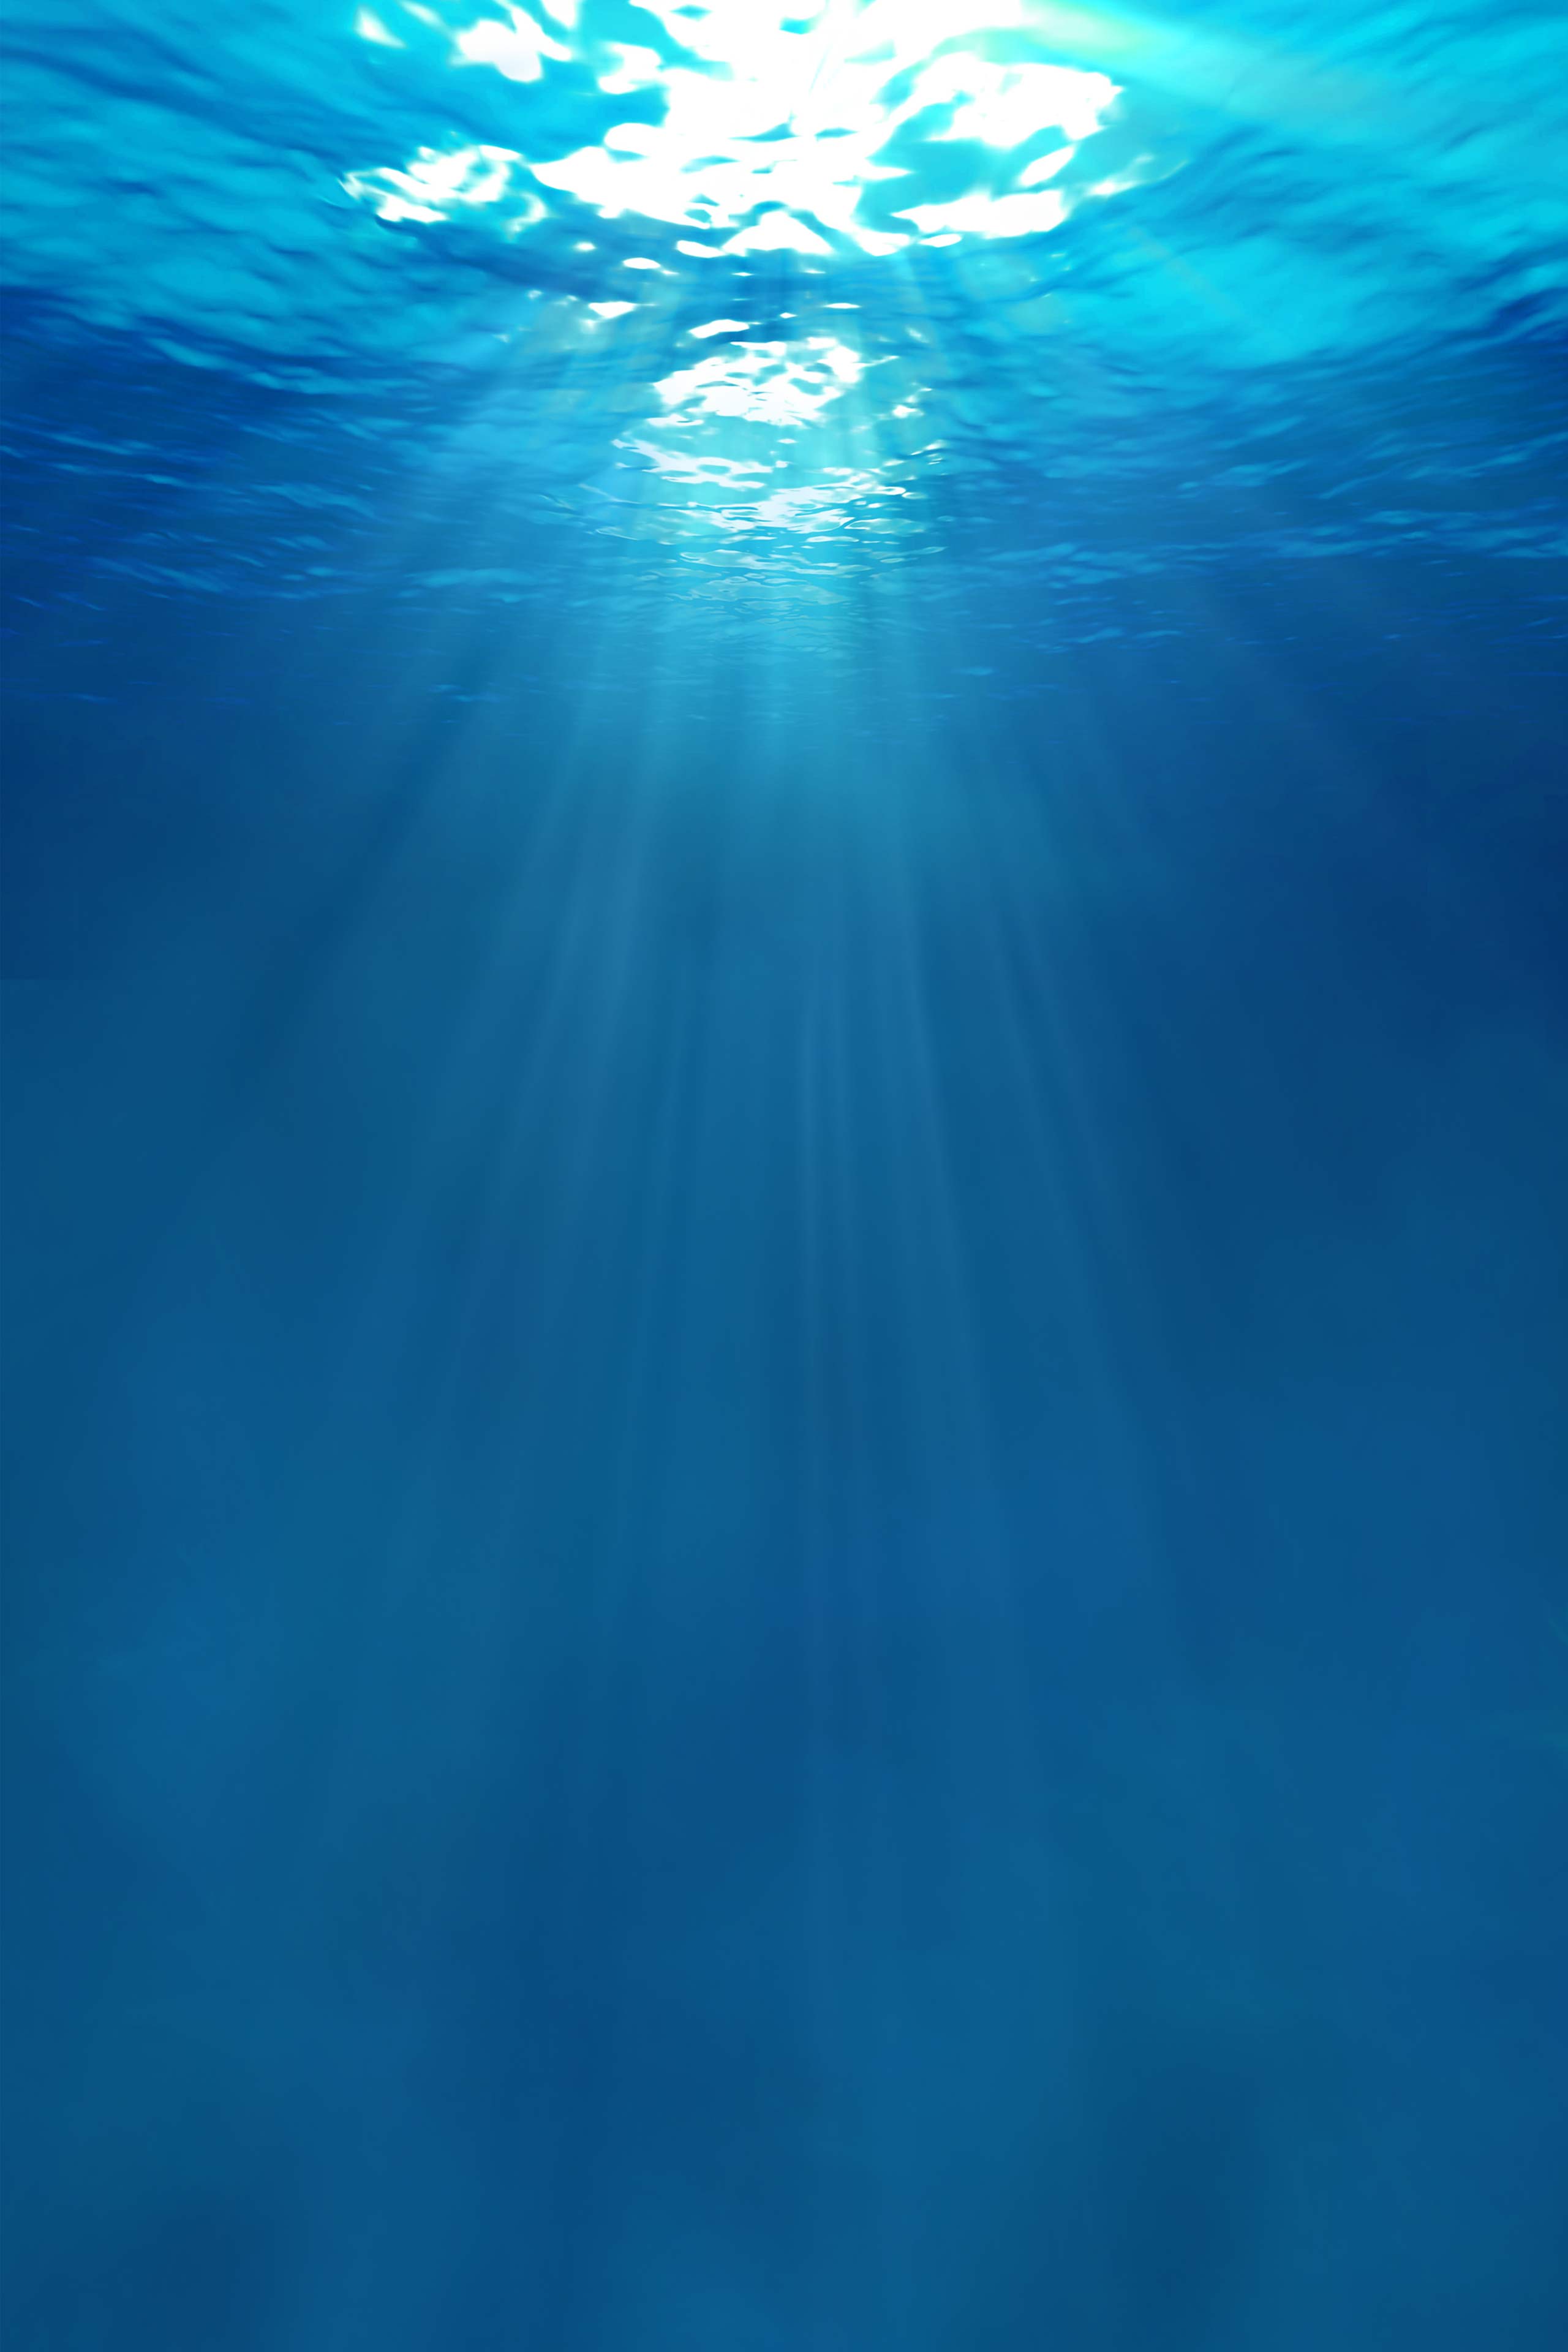 Các hình nền dưới nước cho iPhone sẽ khiến chiếc điện thoại của bạn trở nên mới mẻ và sống động hơn bao giờ hết. Với các hình ảnh đặc sắc về đại dương và động vật dưới nước được thiết kế tinh tế, bạn sẽ không muốn rời khỏi màn hình của mình.